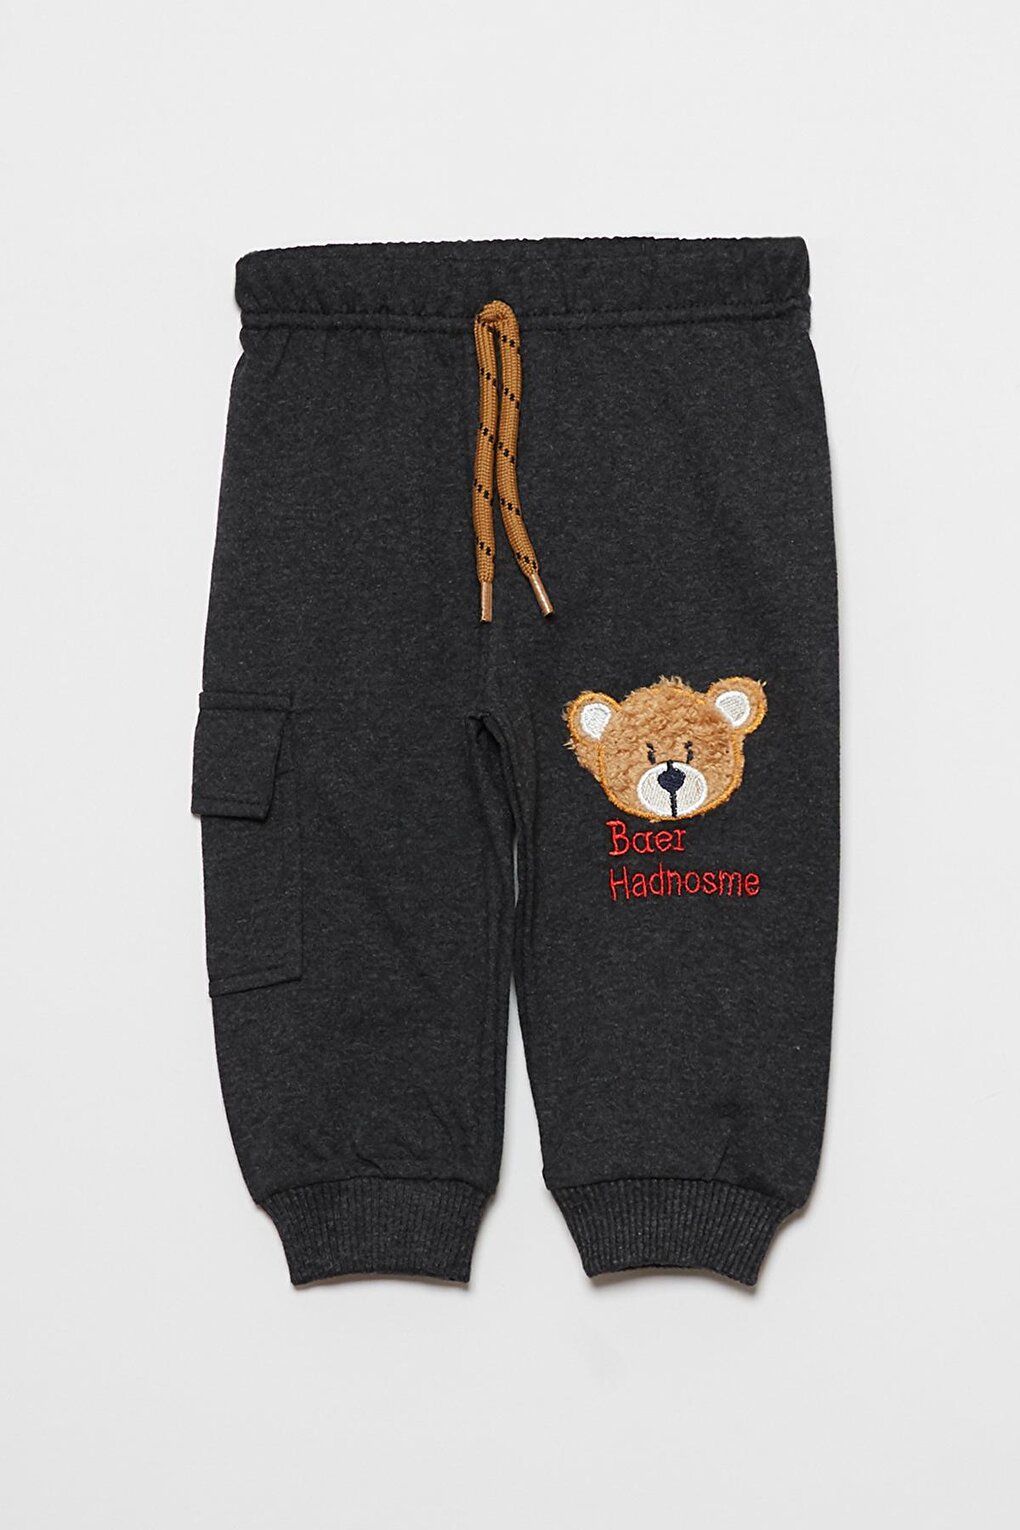 Спортивные штаны для маленьких мальчиков с карманами и принтом медведя JackandRoy, антрацит мягкая пижама с принтом медведя для маленьких девочек и мальчиков